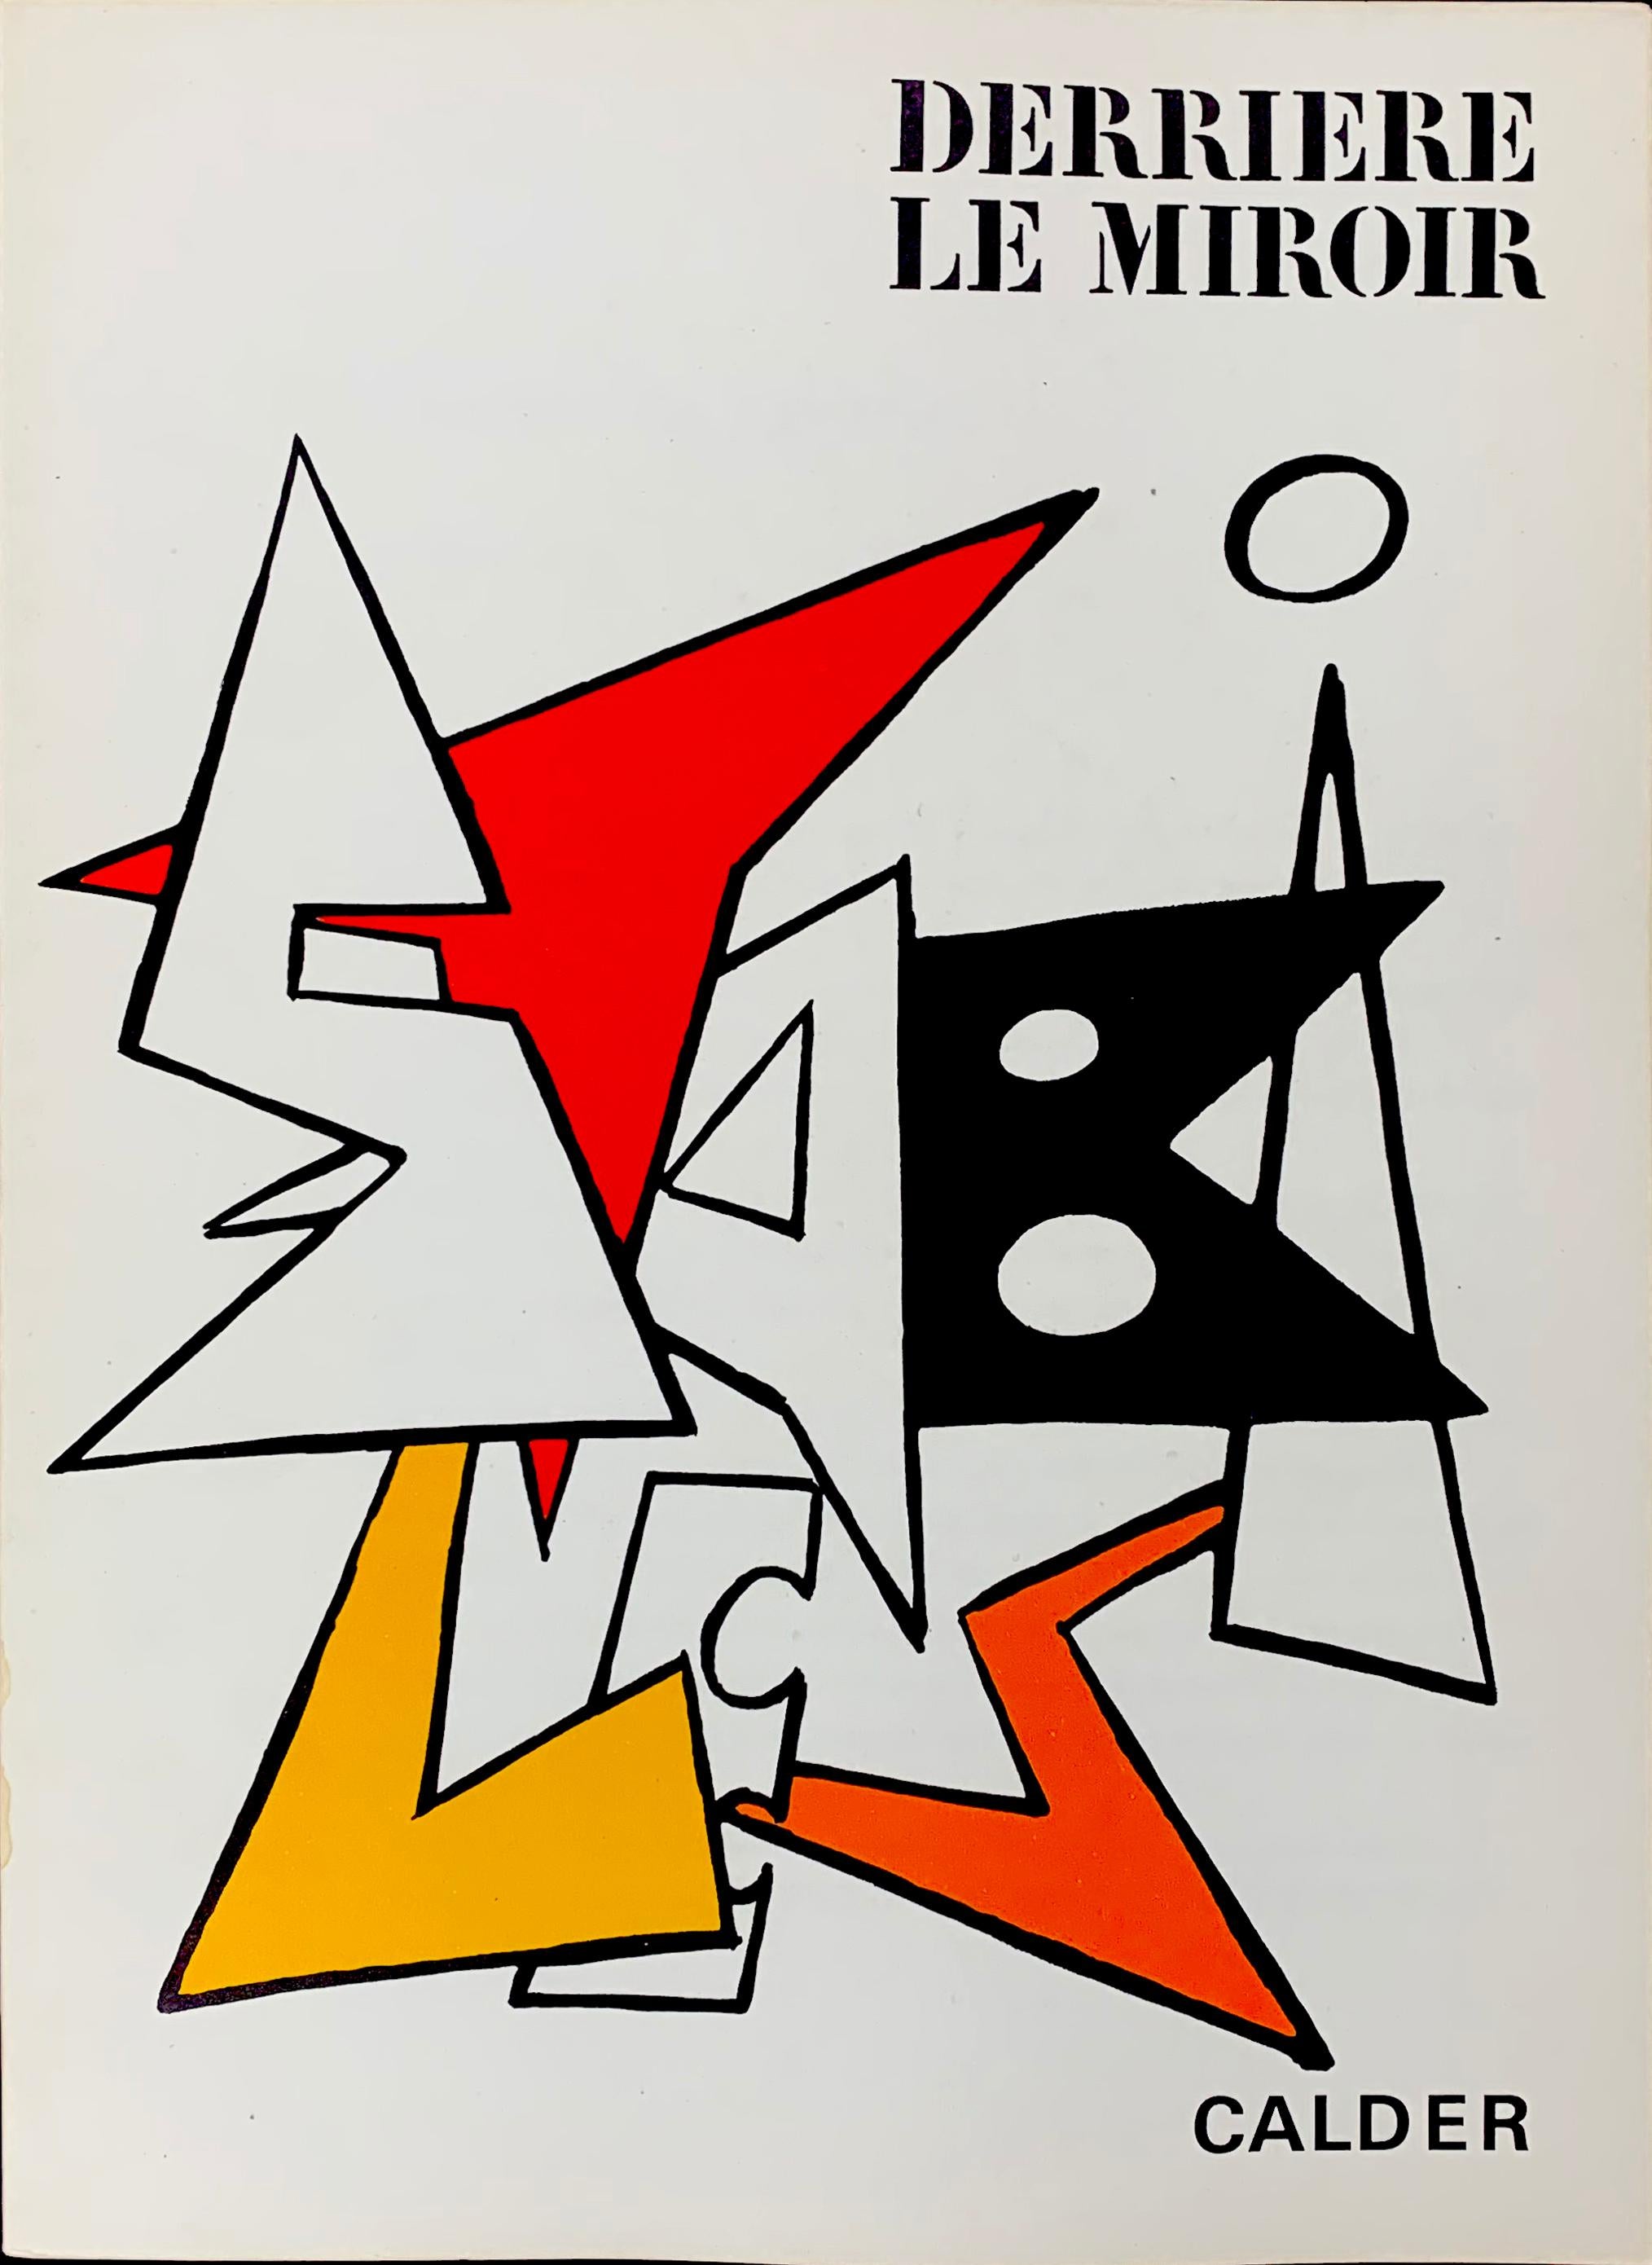 Derriere Le Miroir No. 141 Cover - Print by Alexander Calder